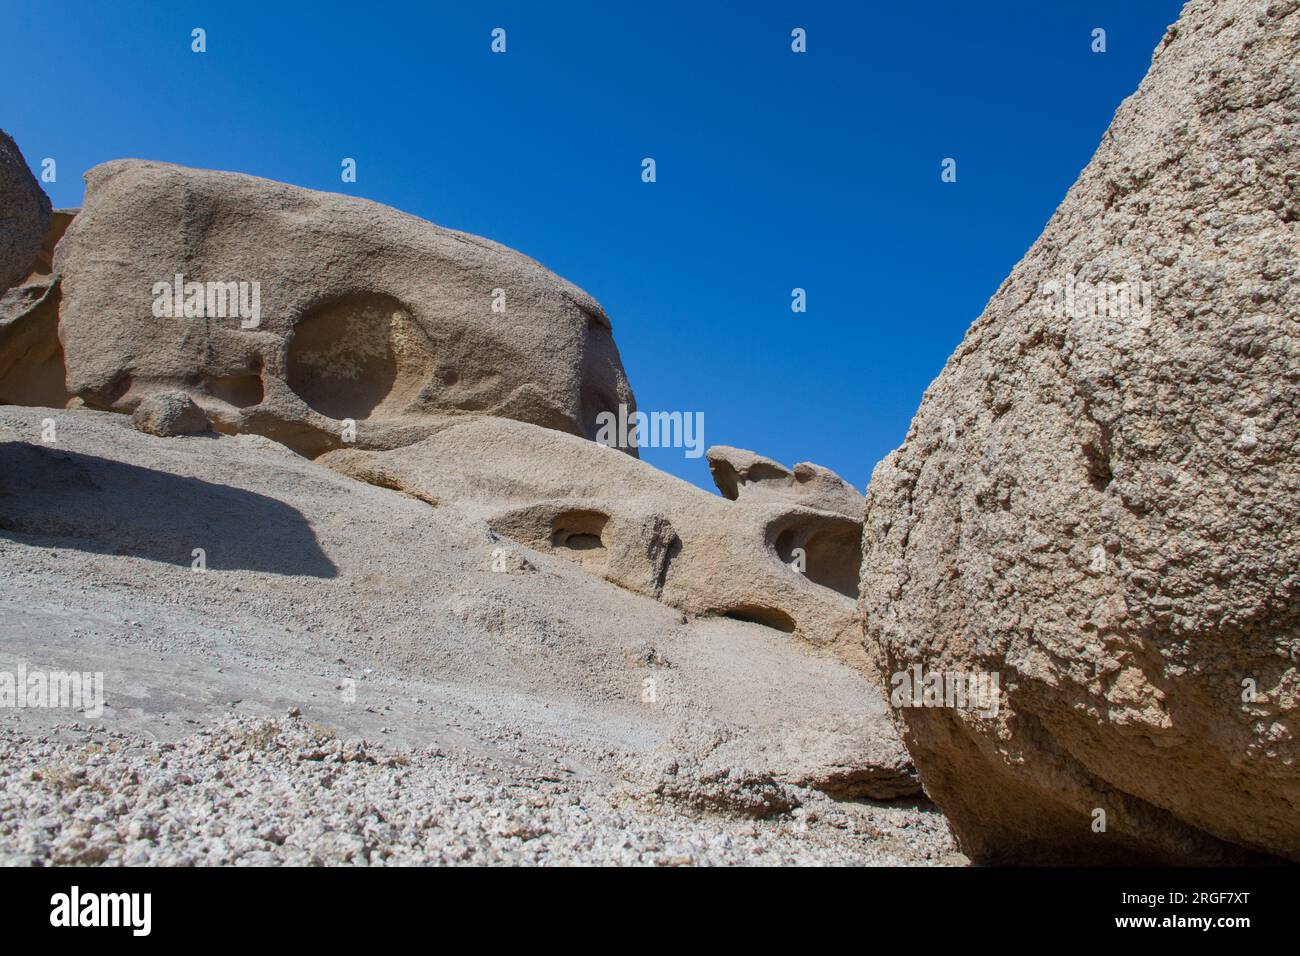 Prinz ahmed Höhle - Prinz ahmed Höhle Steine Formen in al Rwaidah Stadt in al qwaiaiah gonernrate westlich von riad 240 km in Saudi-Arabien Stockfoto